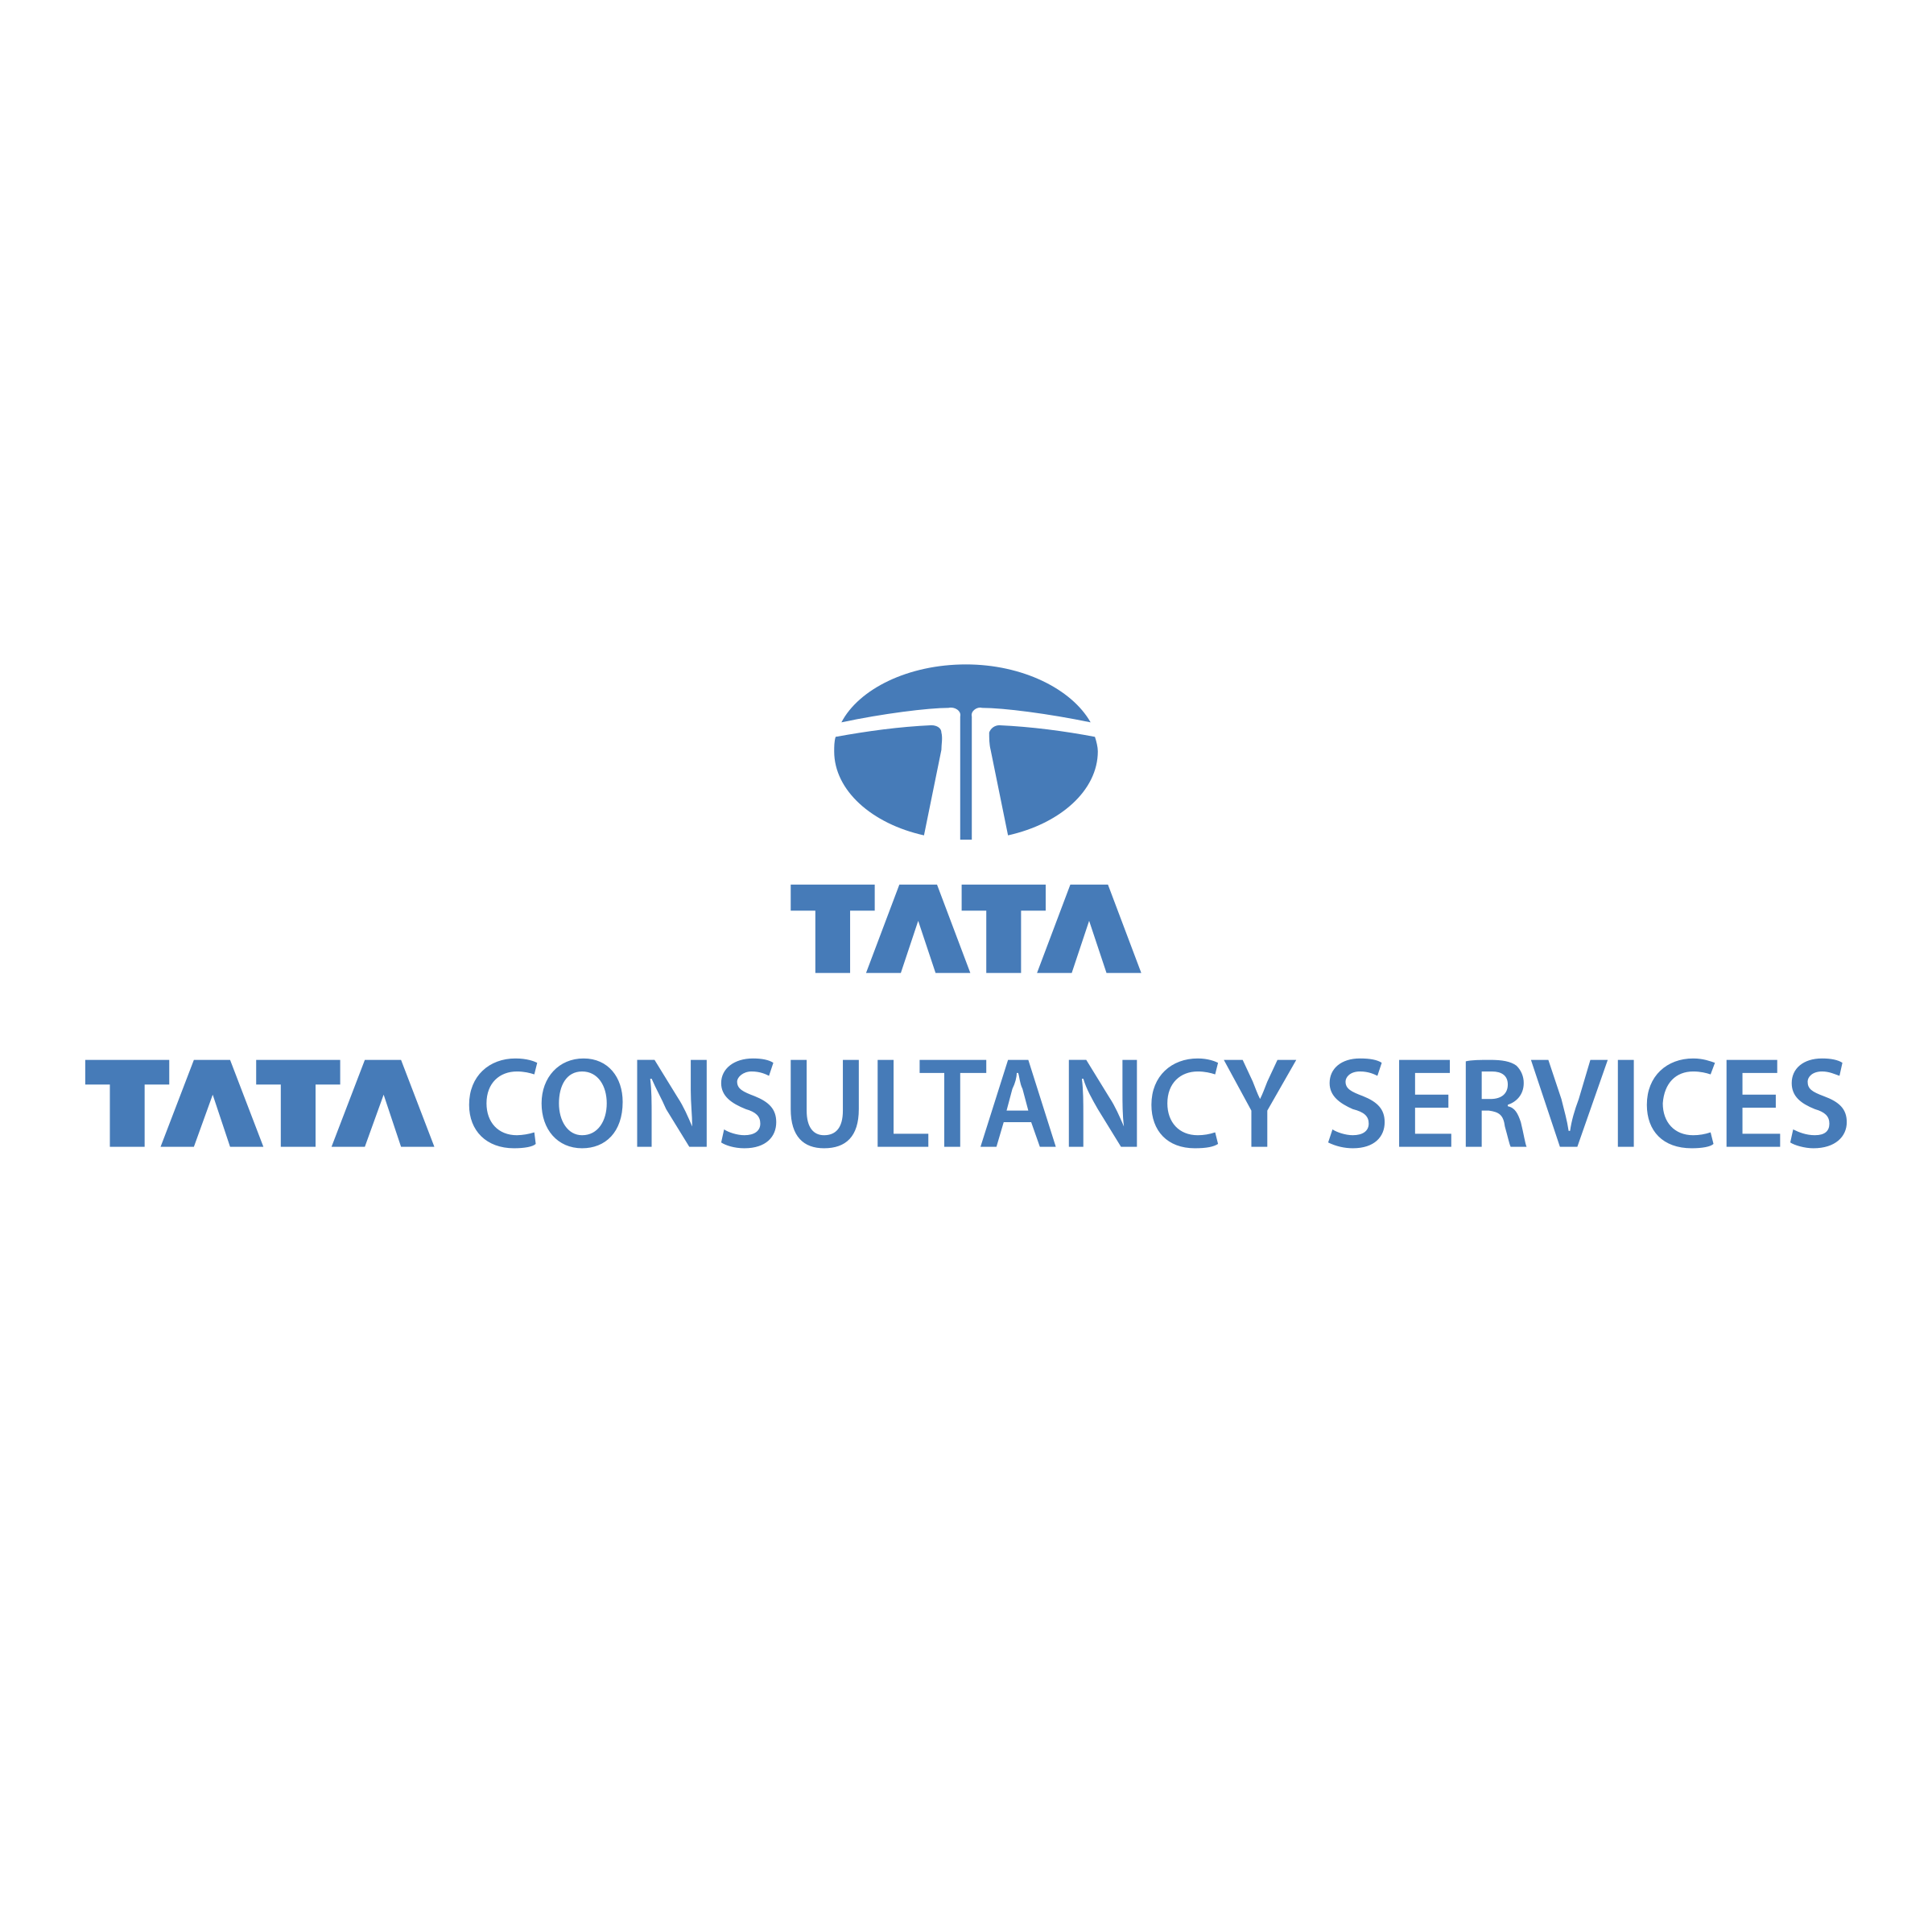 Tata Logo Png - Tata-logo-tra